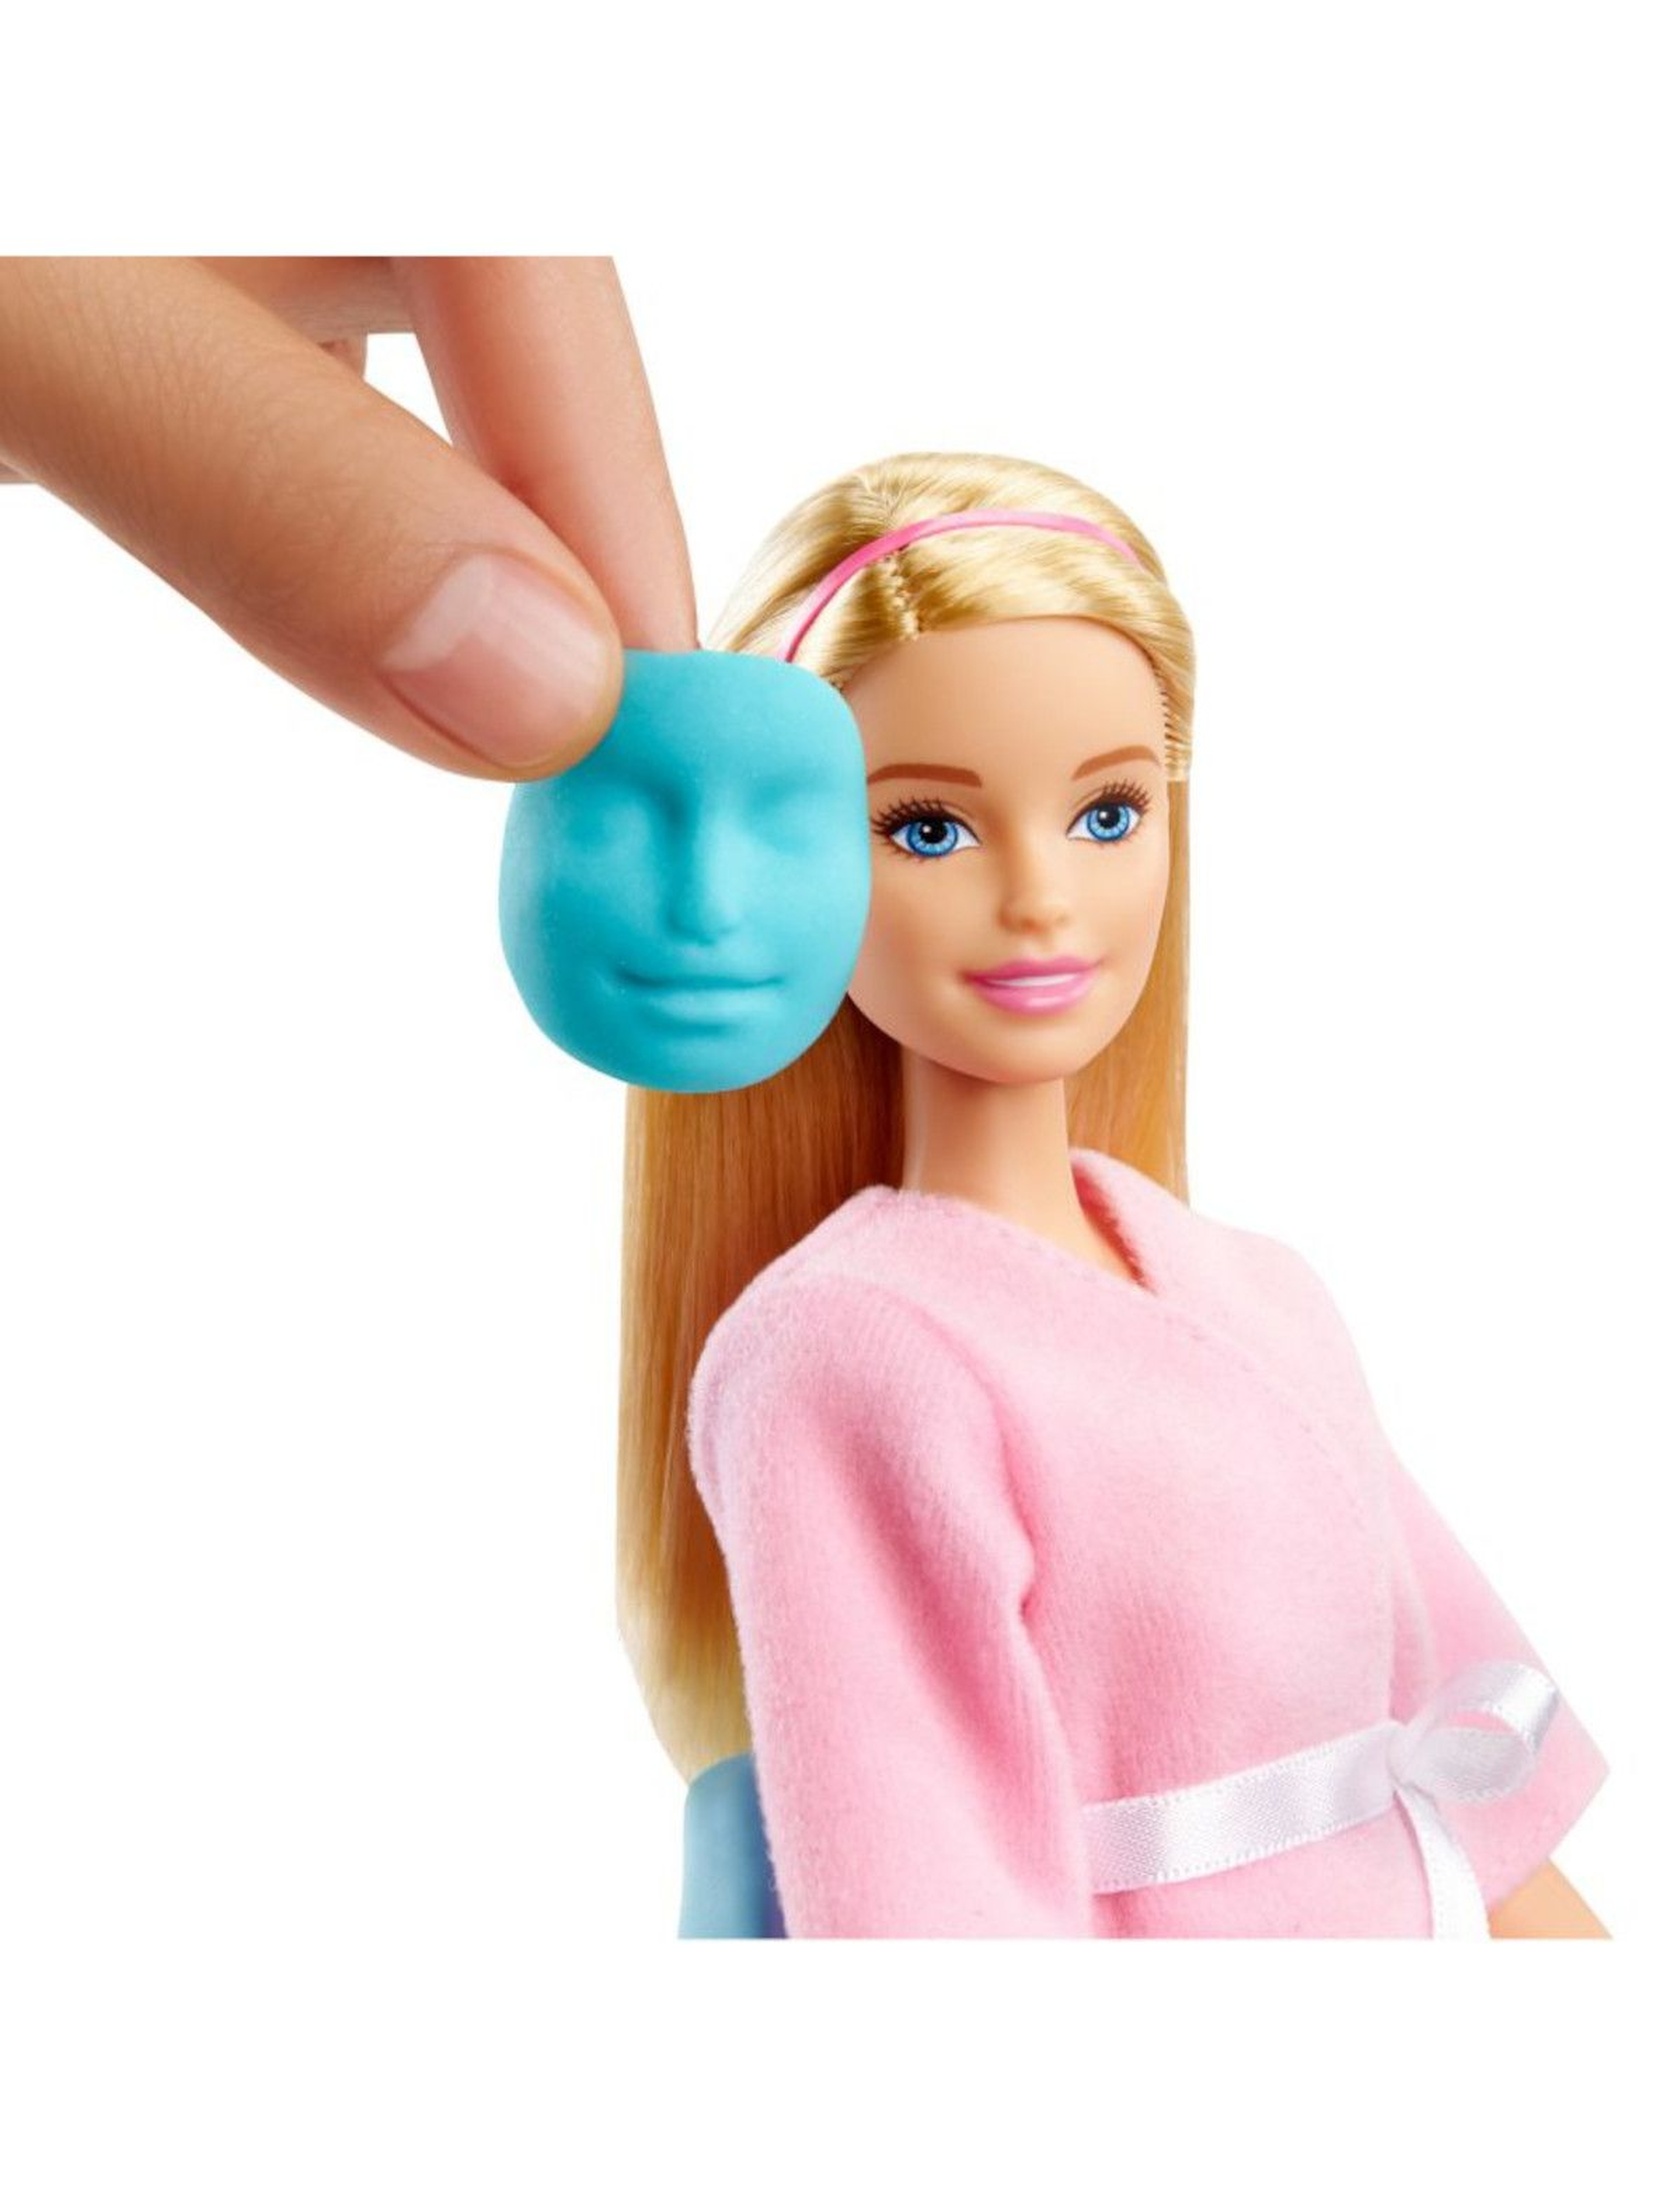 Barbie - Zestaw Salon SPA Lalka ze szczeniaczkiem, akcesoriami i masą plastyczną wiek 4+